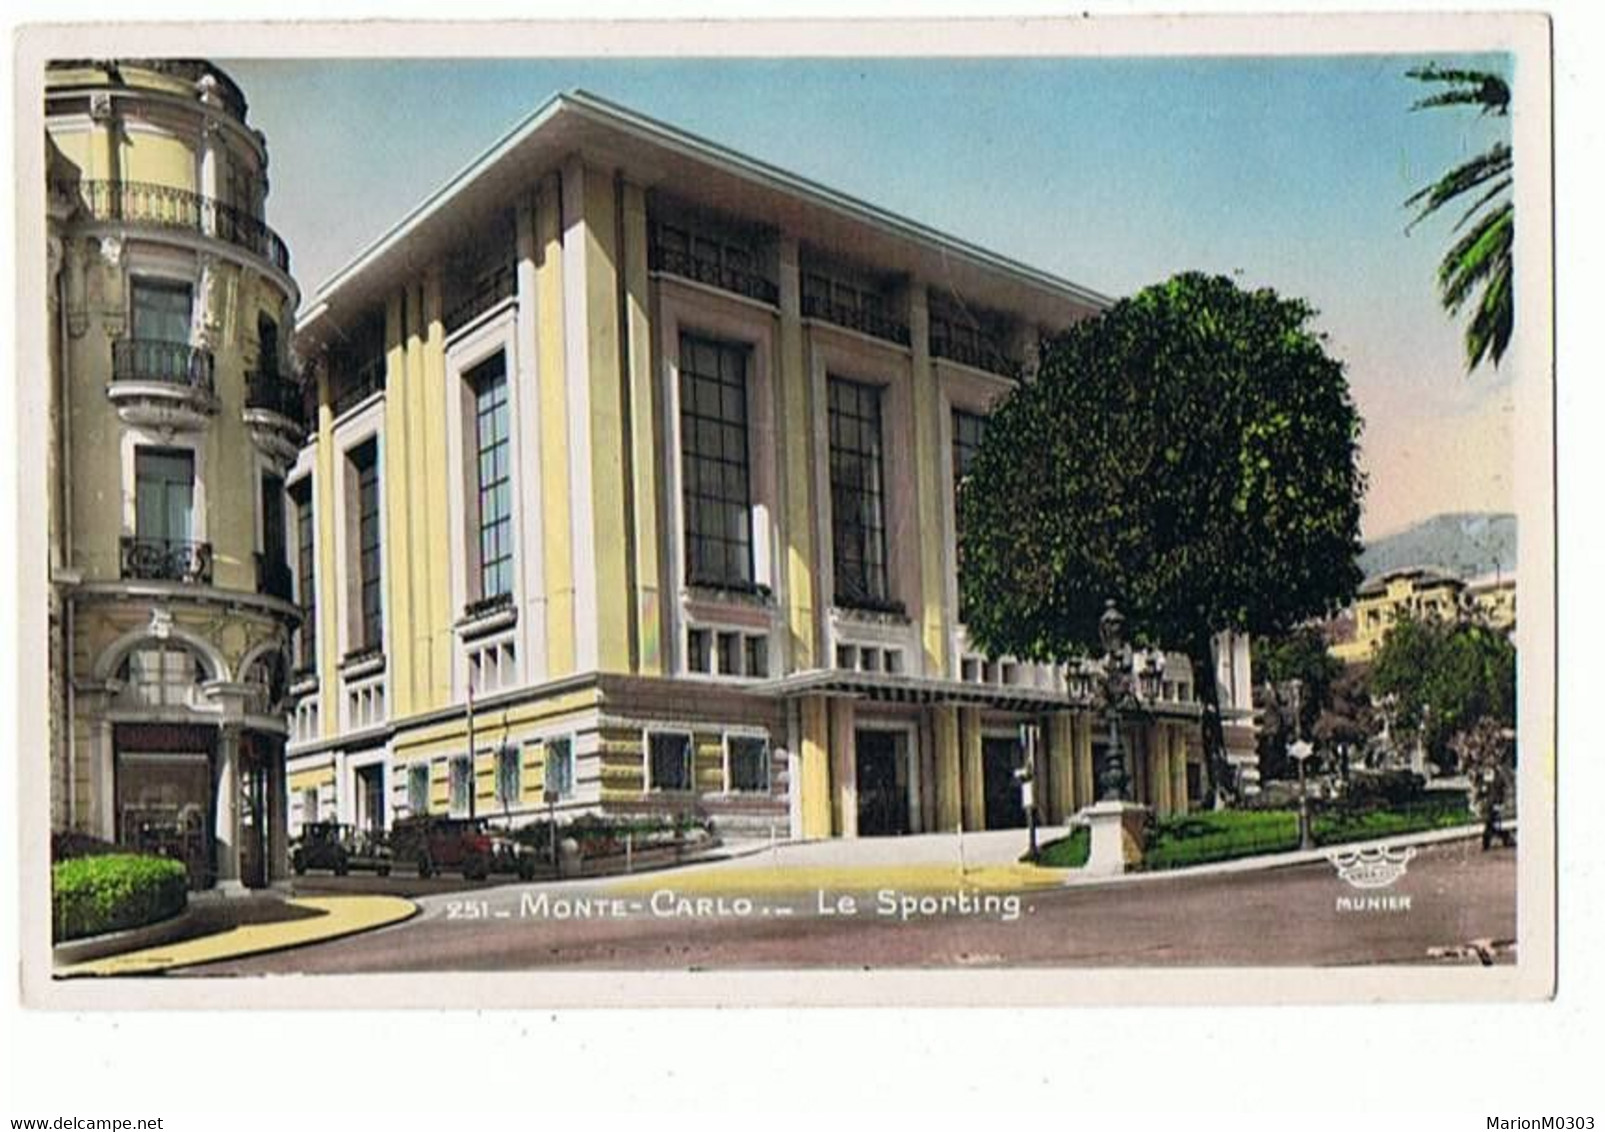 MONACO - Monte Carlo, Le Sporting - 214 - Opernhaus & Theater